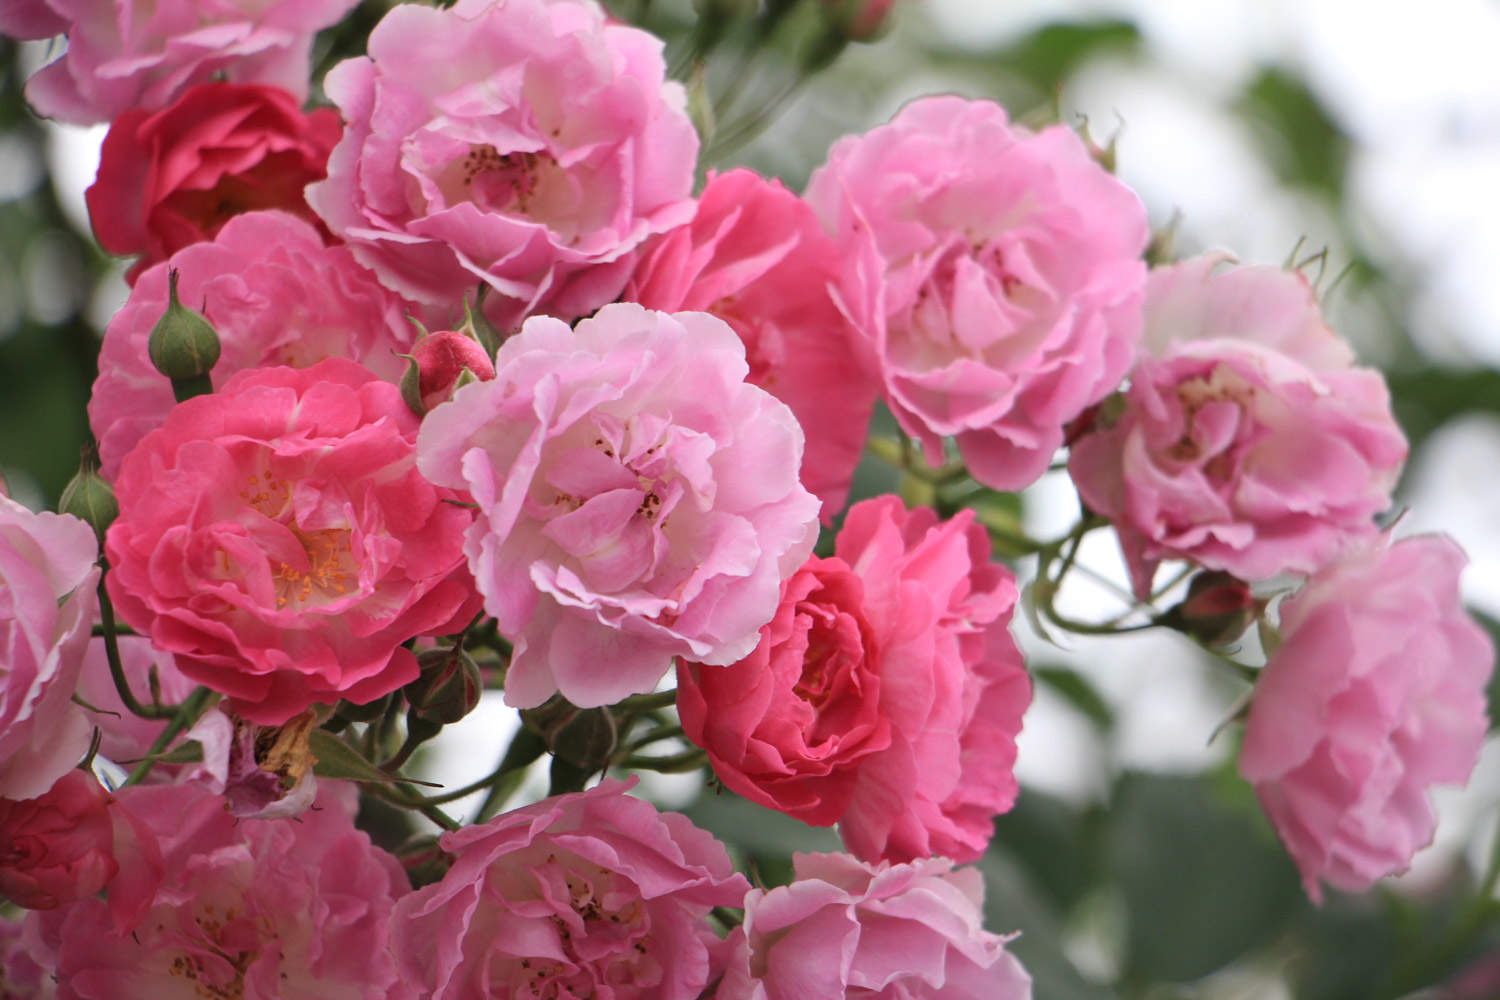 4,粉色蔷薇:粉色的蔷薇花花语寓意为初恋,因为粉色本就是娇嫩的焉色